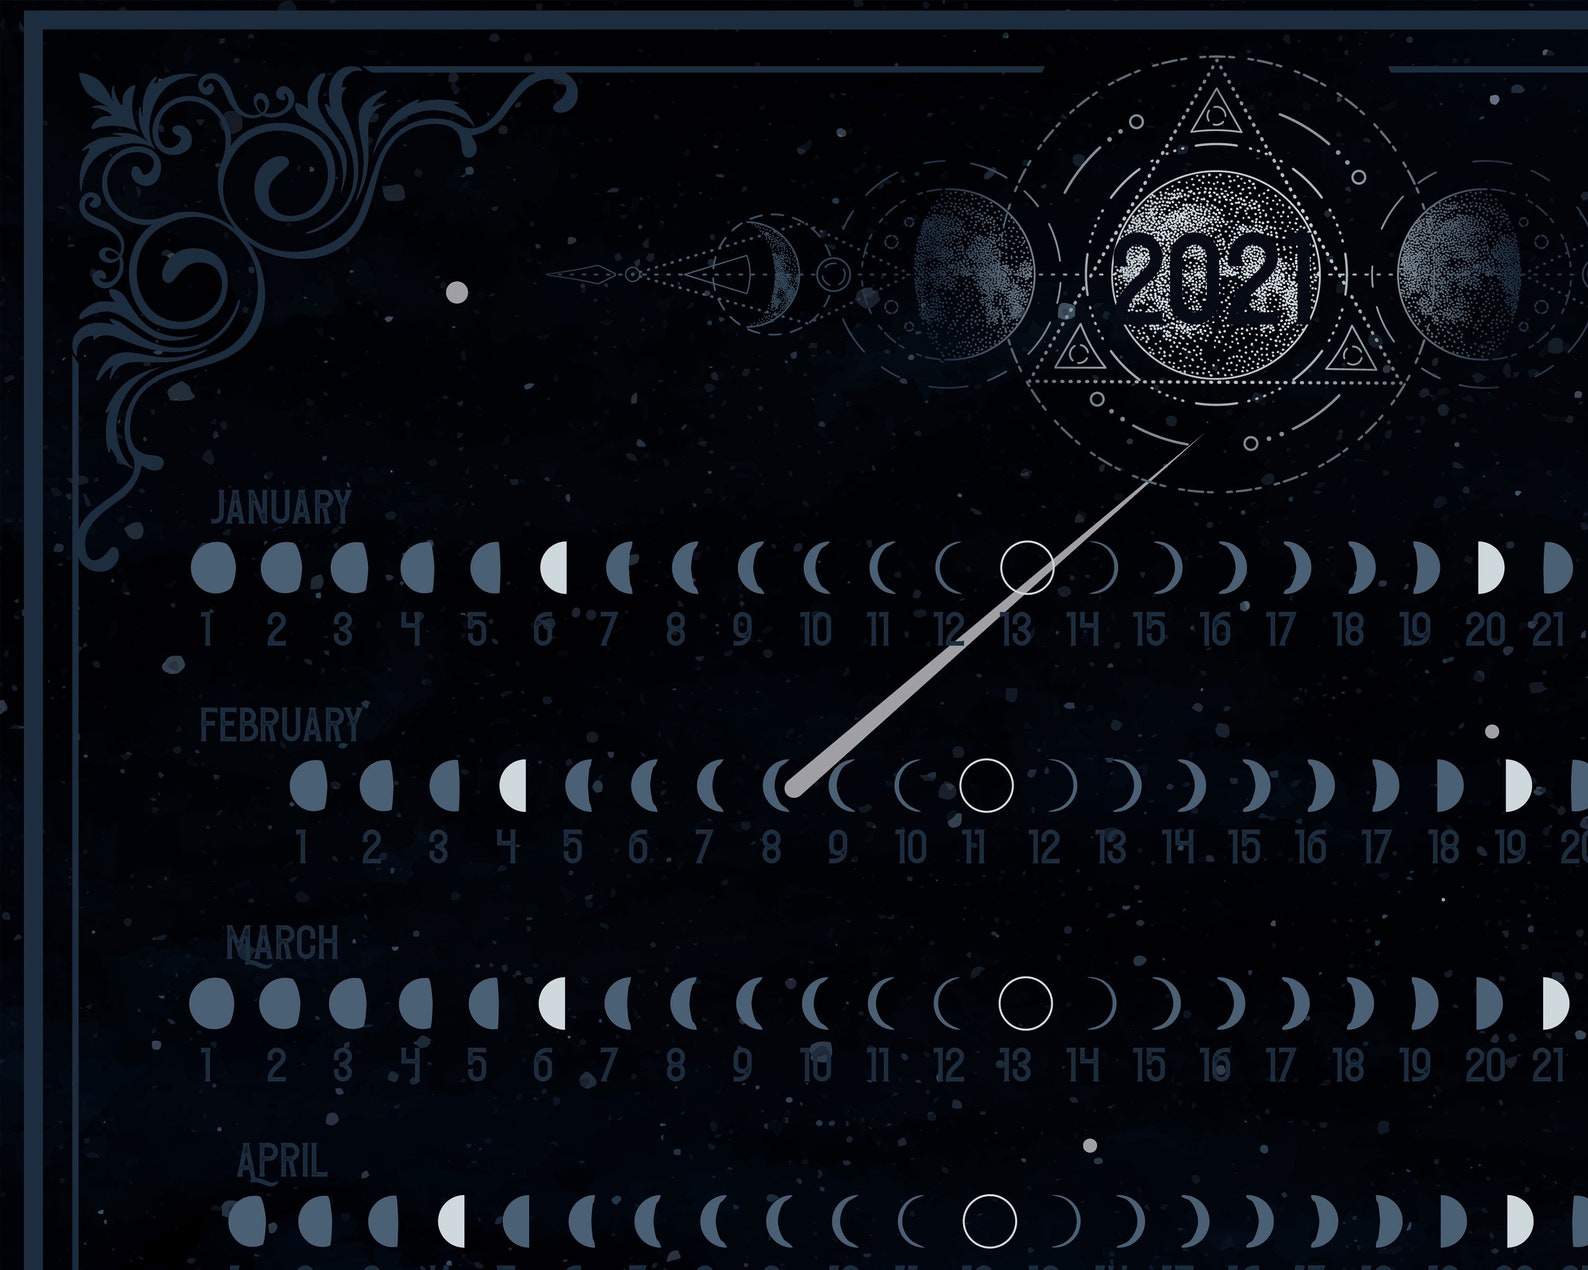 Blue Moon Calendar 2021 Lunar Months Chart A2 Digital Poster Etsy